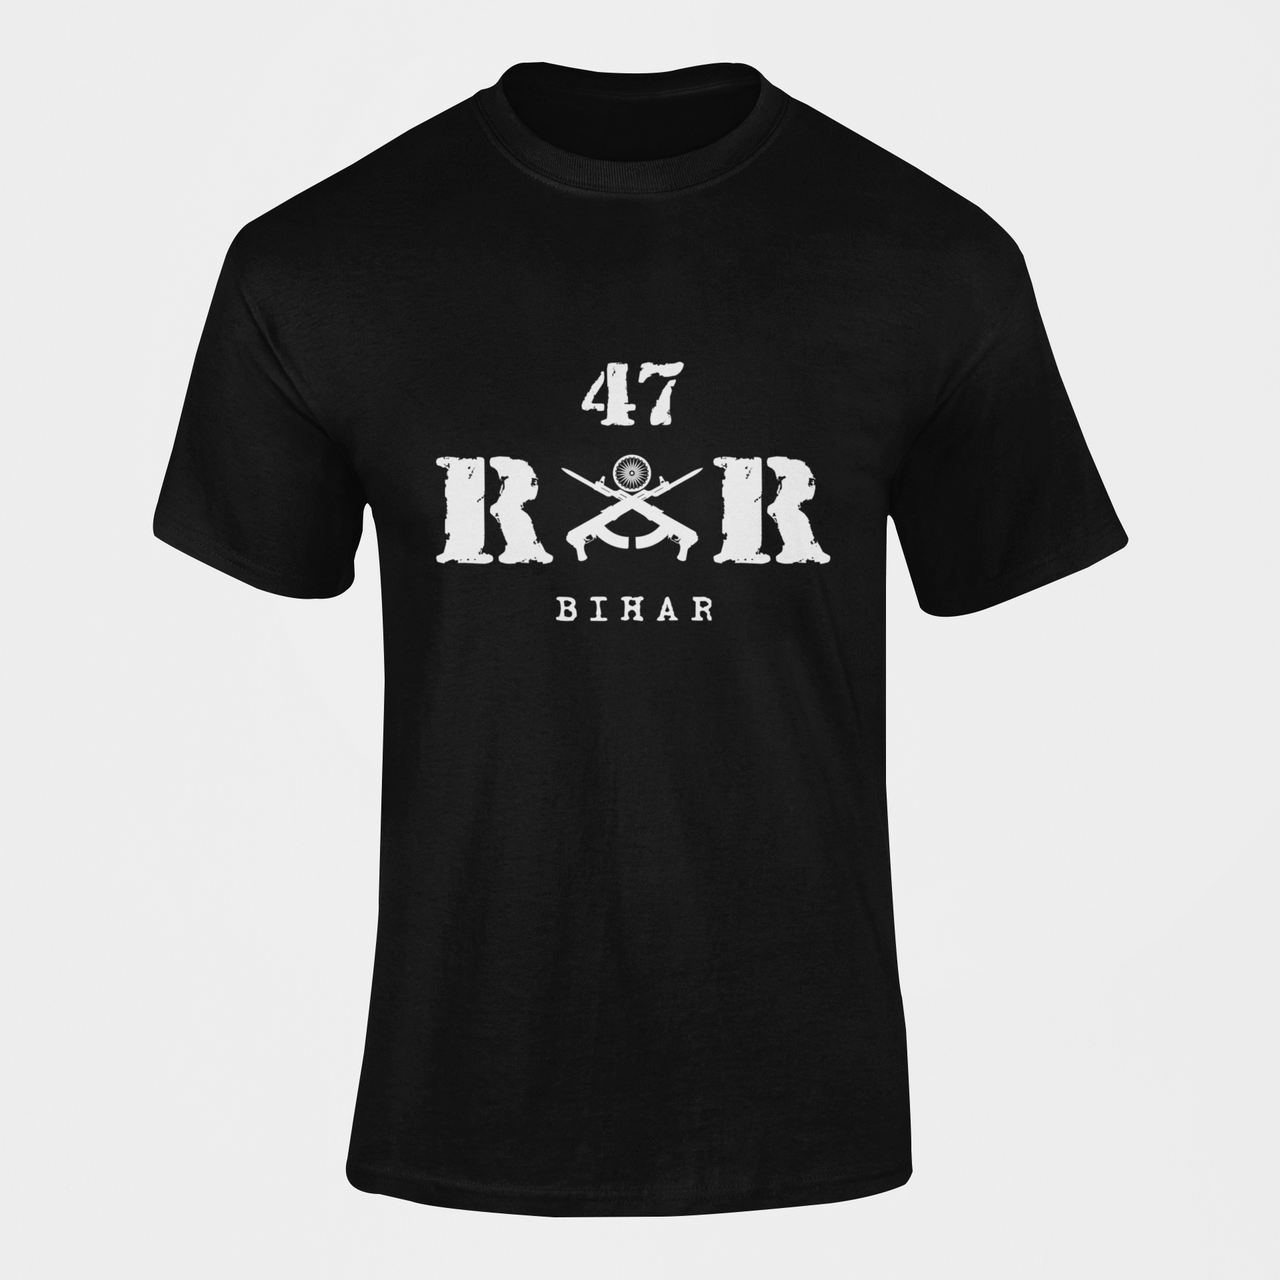 Rashtriya Rifles T-shirt - 47 RR Bihar (Men)